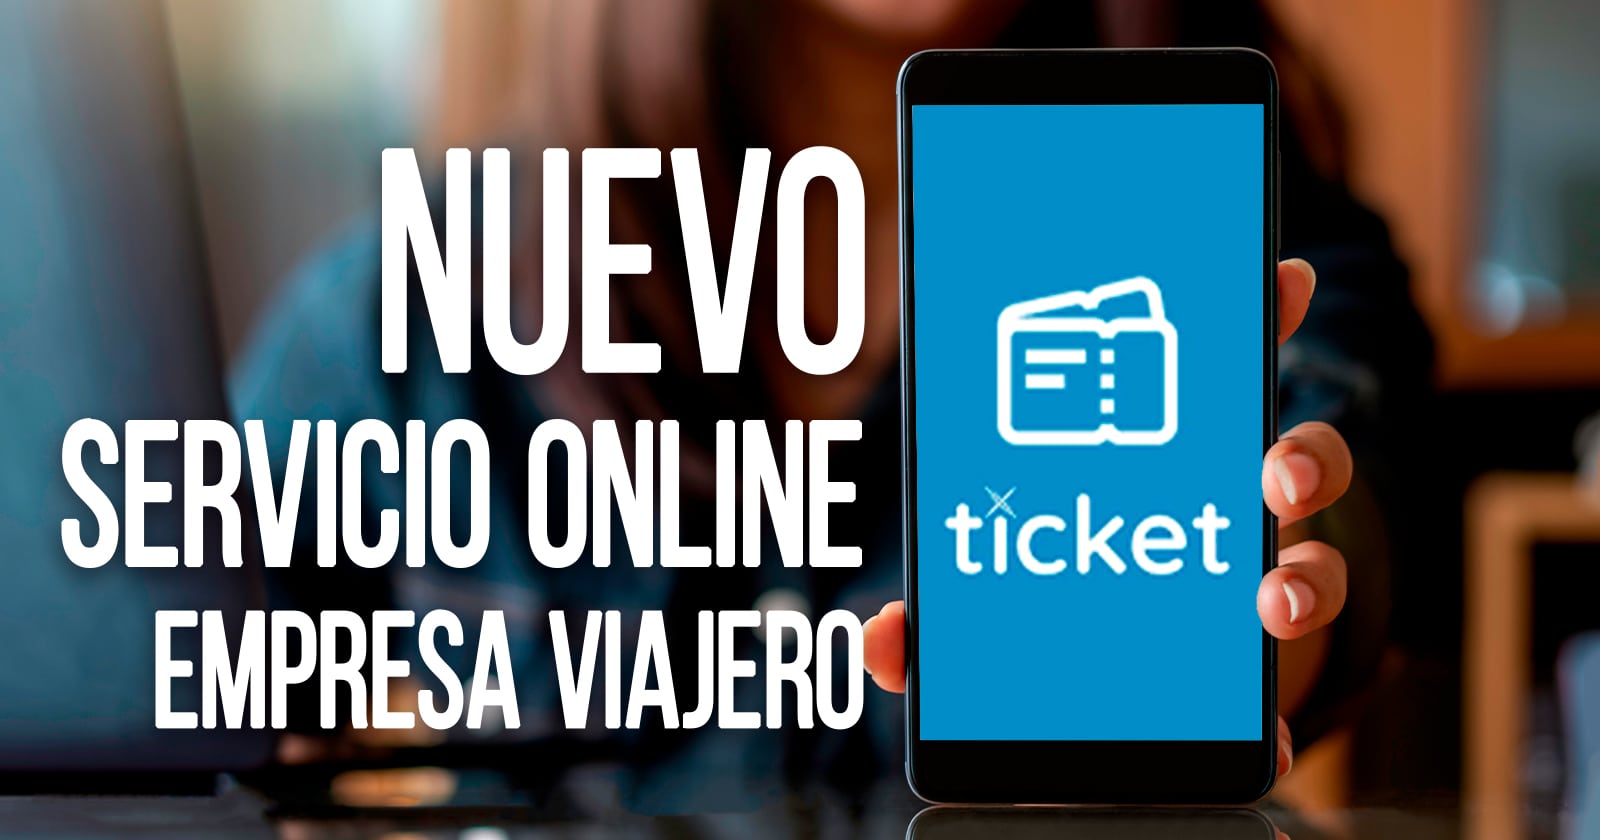 Nuevo Servicio Online de la Empresa Viajero Con Aplicación Cubana Ticket